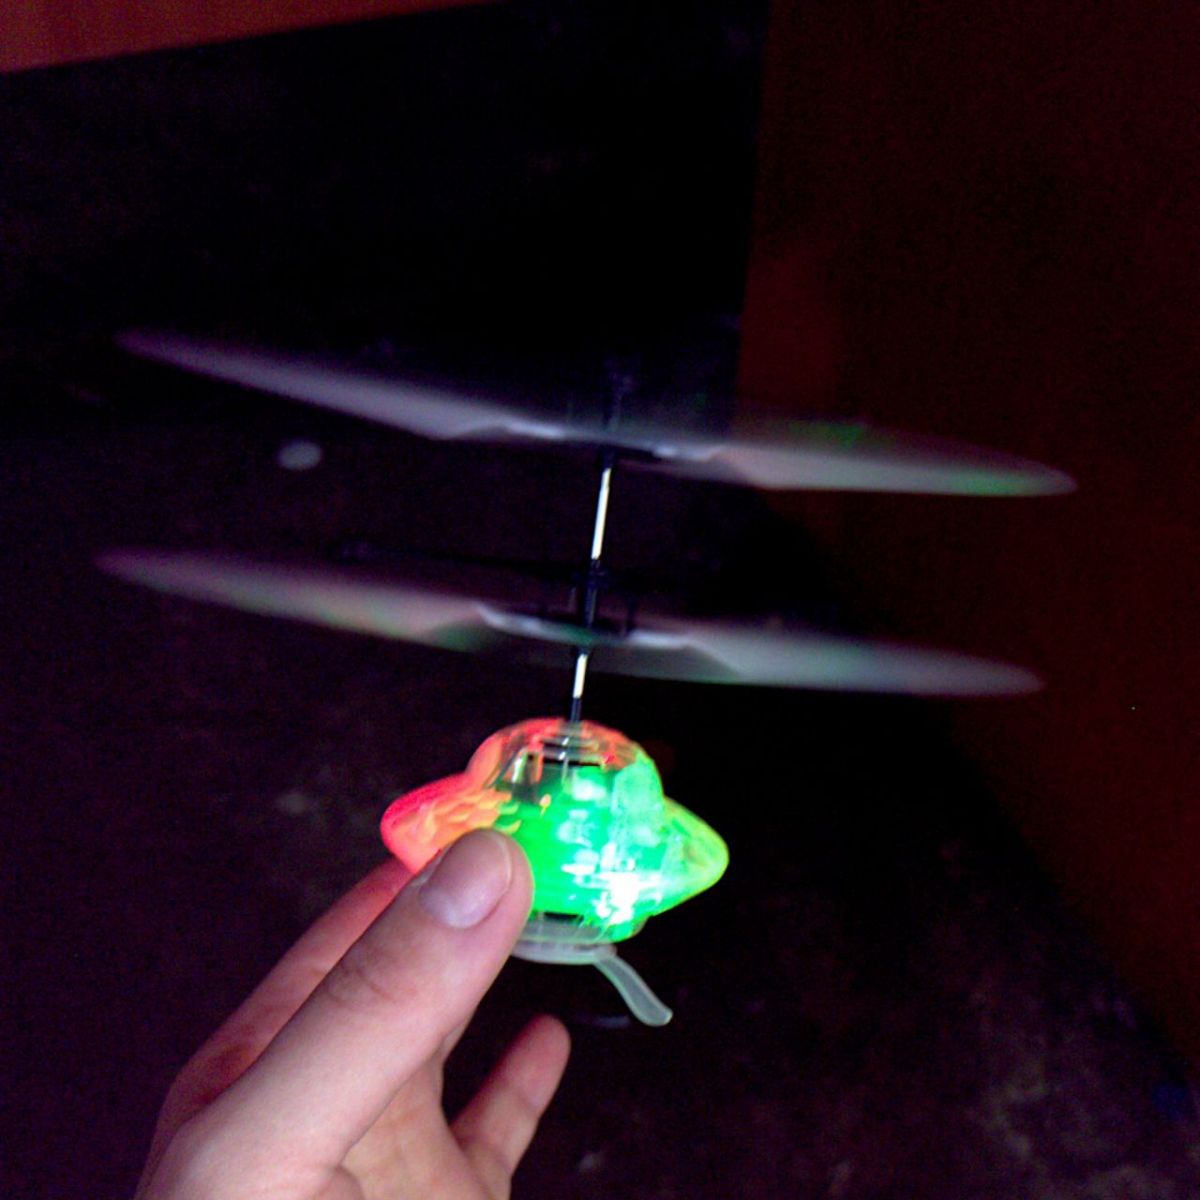 Літаюча іграшка-вертоліт "Flying", зелена